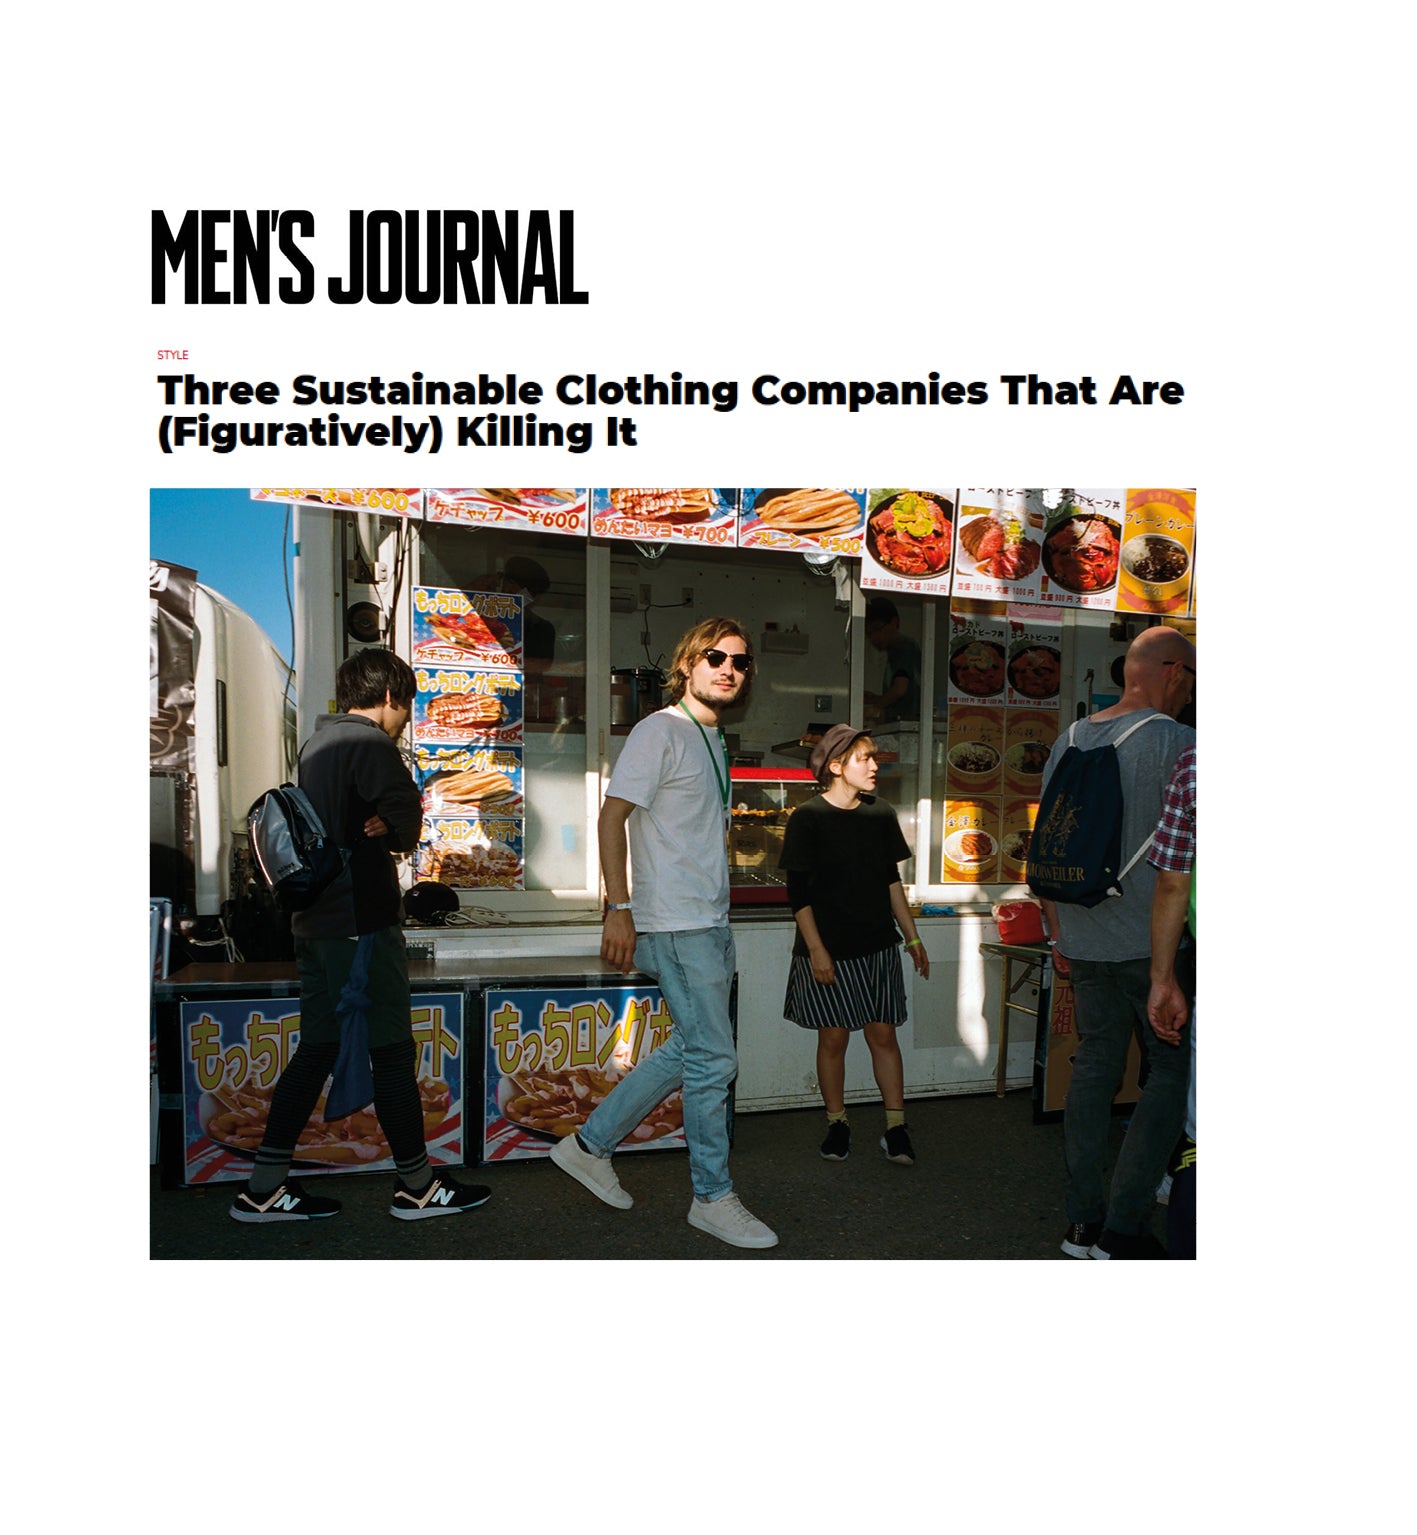 1. Men's Journal